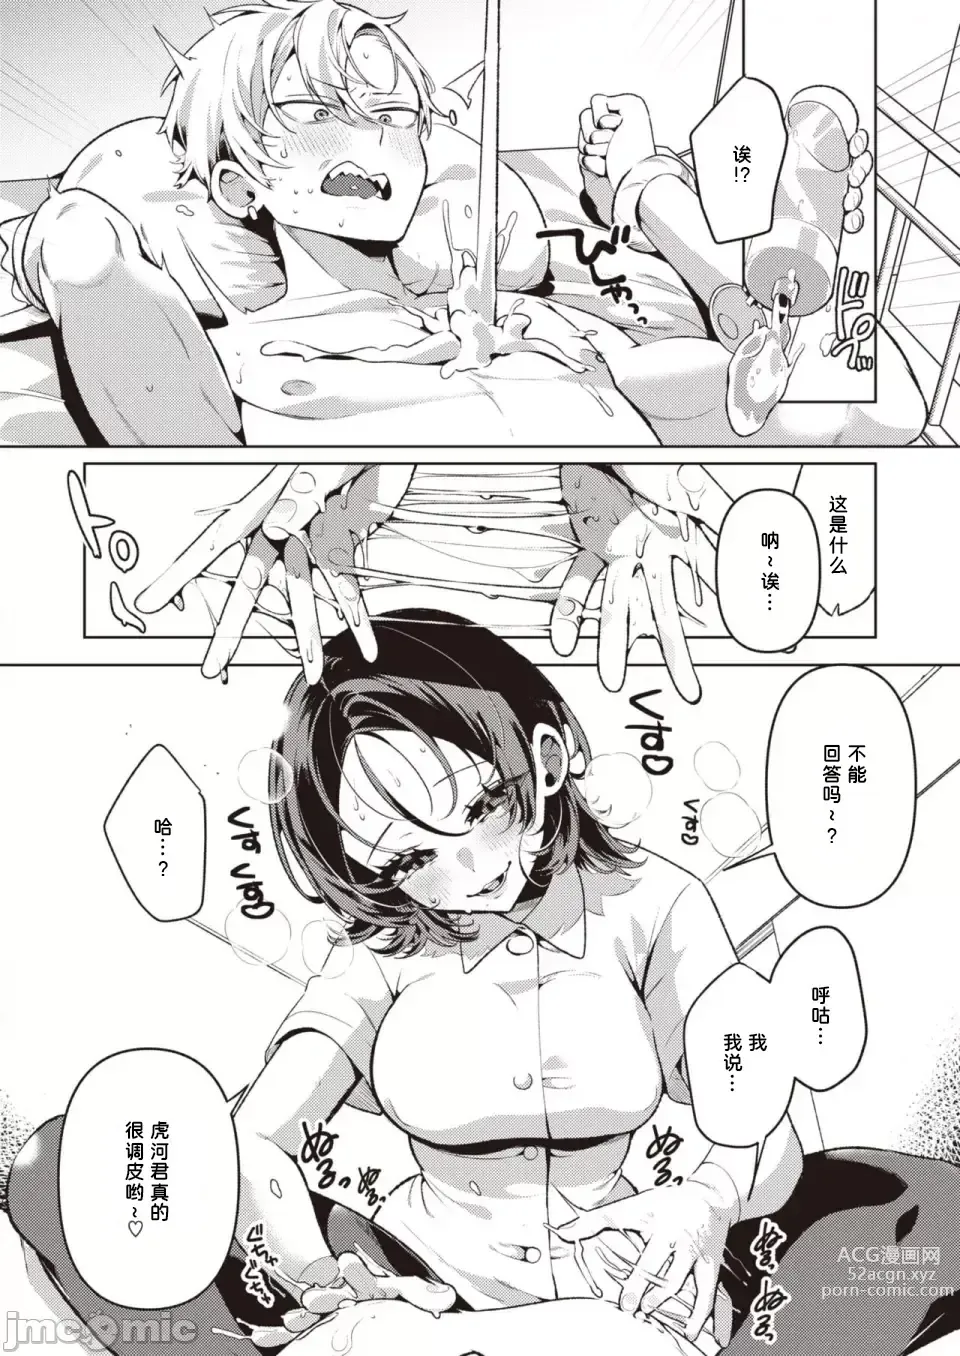 Page 10 of manga Yasashii? Nurse no Kirishima-san